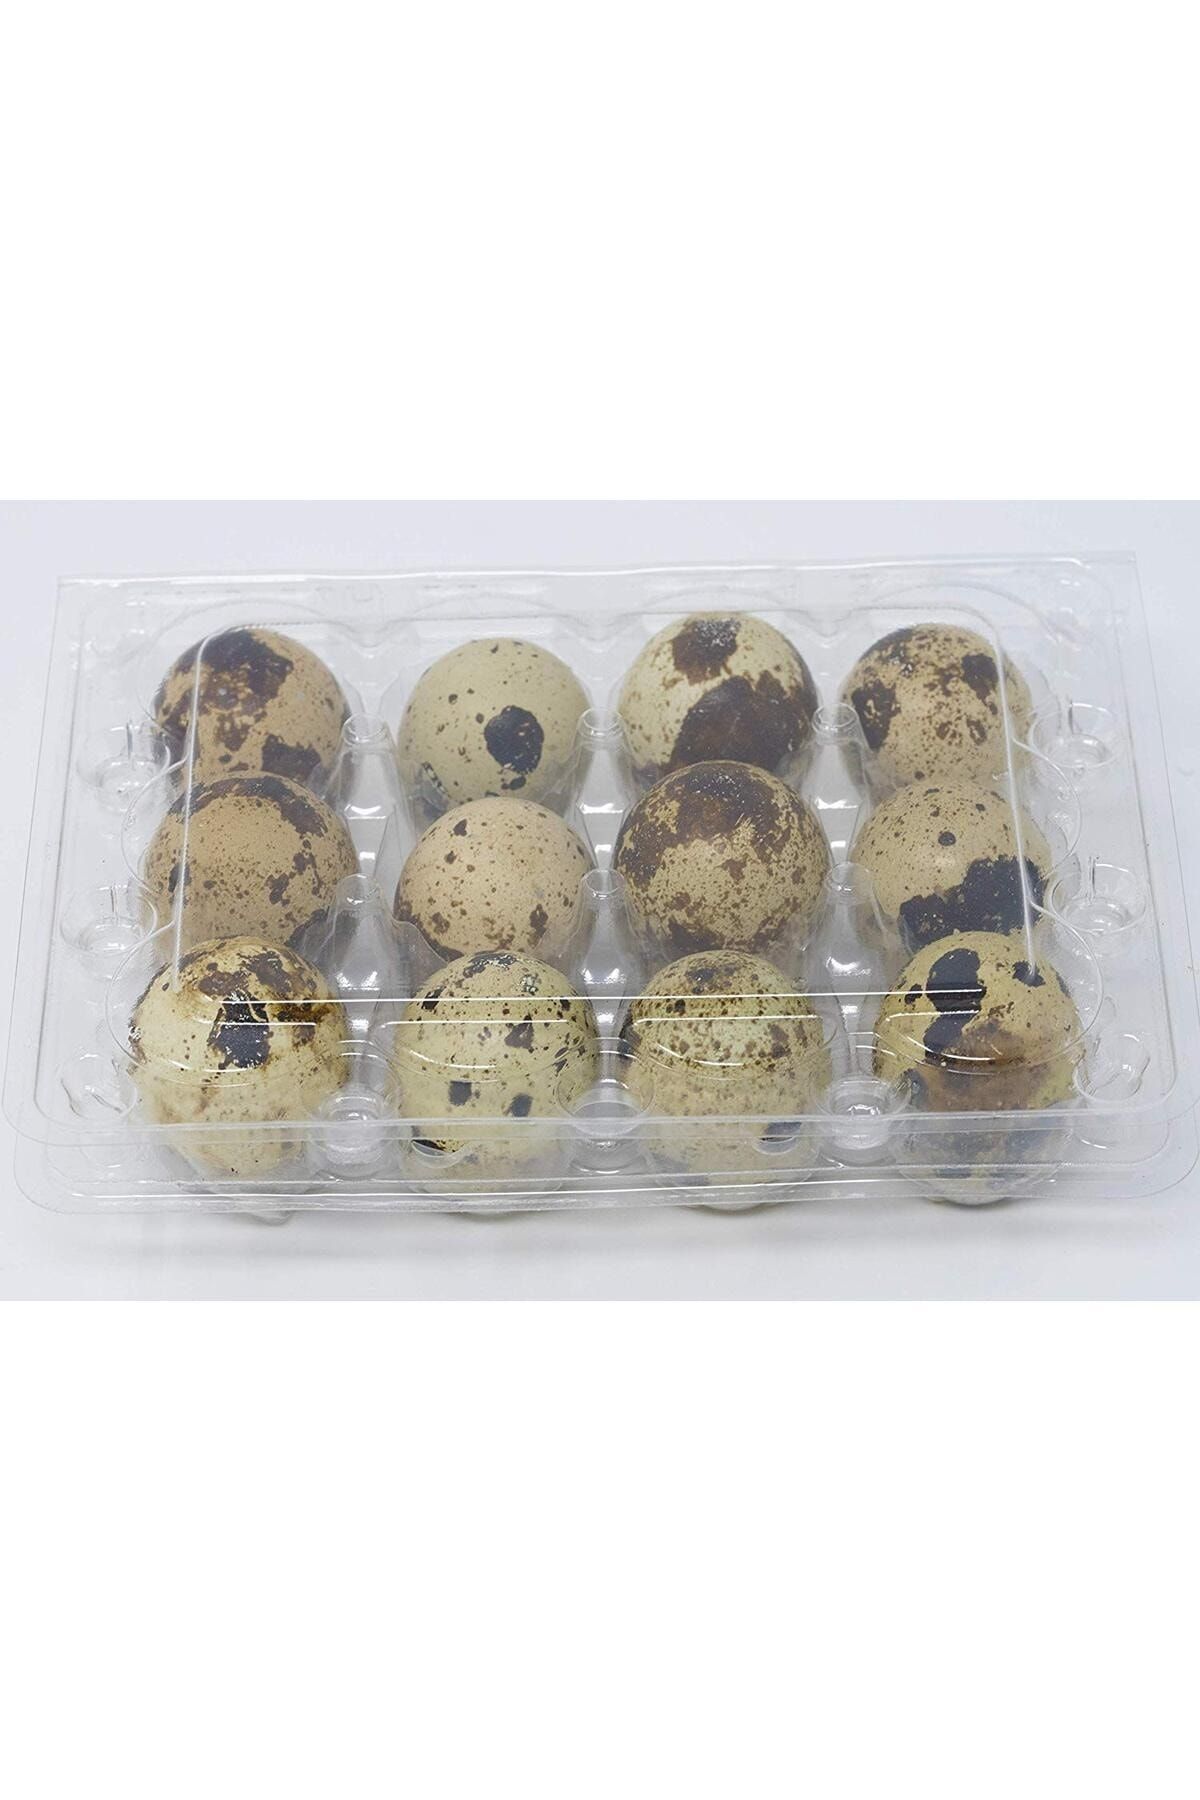 sude hayvancılık Japon Bıldırcın Yumurtası Kuluçkalık Japon 5paketx12=60adet Renk:kahverengi